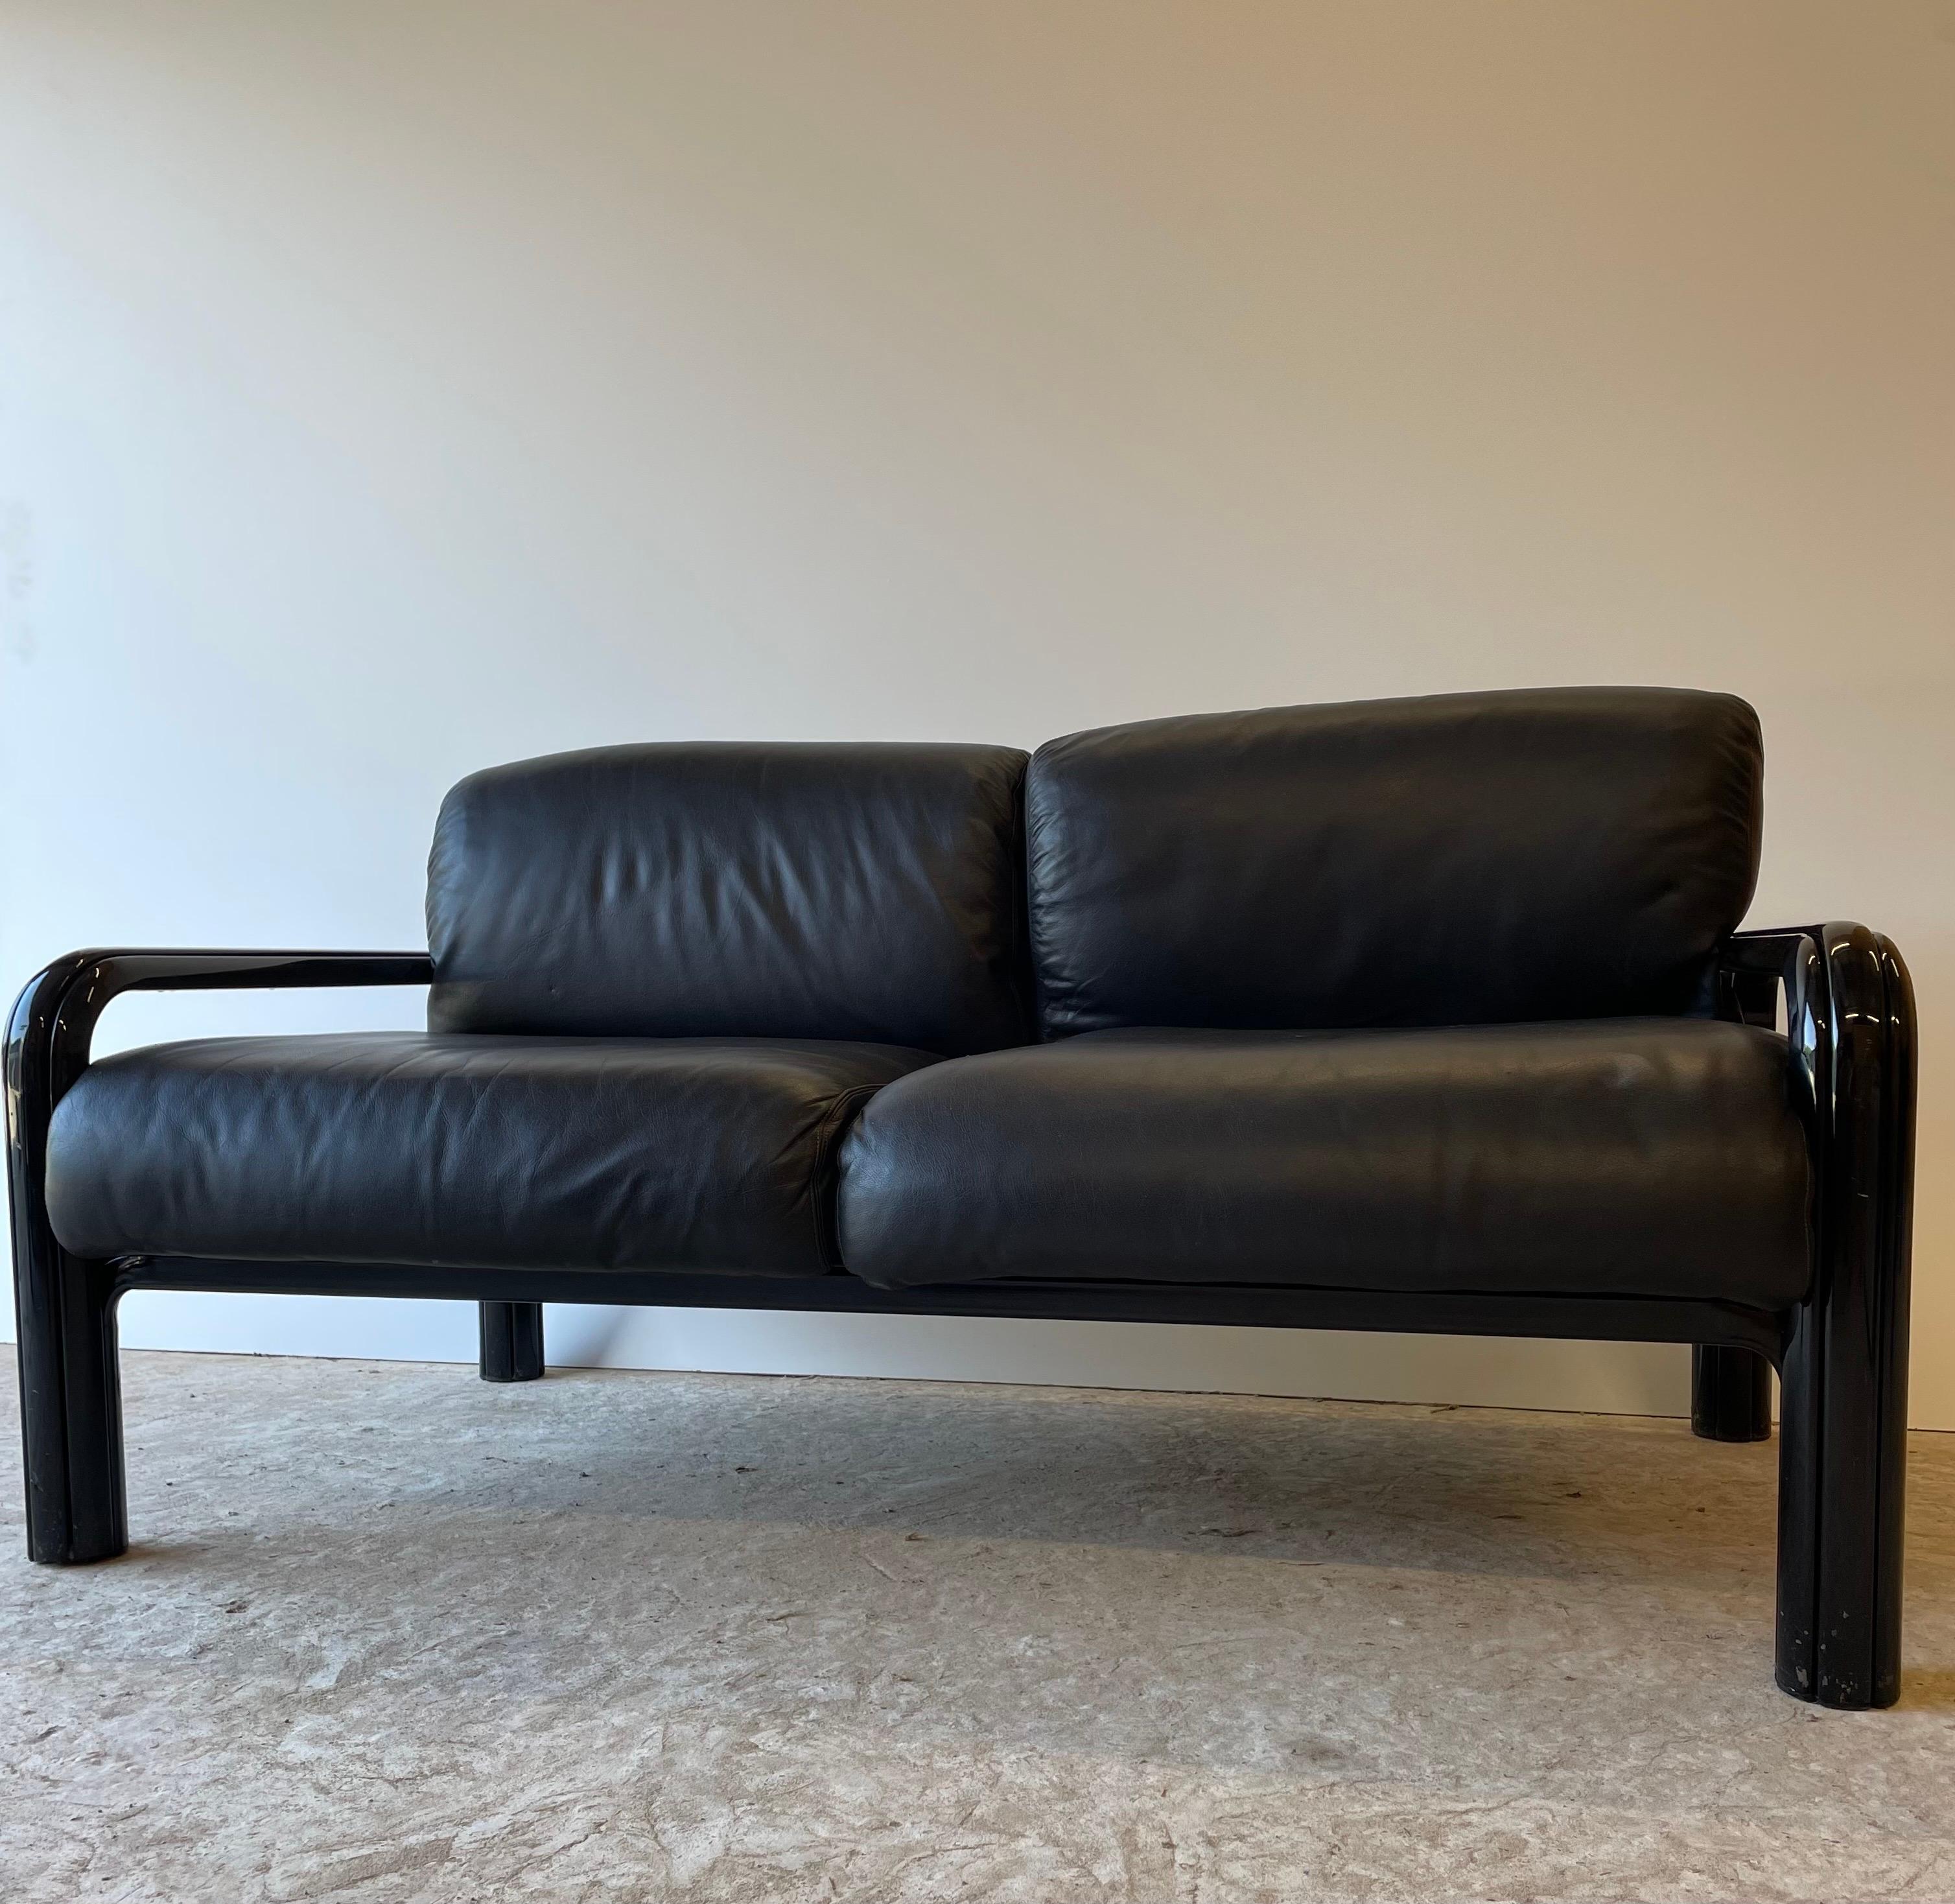 Was ein Fund ! Dieses Sofa ist eine absolute Rarität. Liebhaber erkennen es sofort, der Love Seat von Gae Aulenti. 

Das Sofa befindet sich im Original Zustand und wurde 1970 hergestellt.
Wie auf den Bildern zu erkennen ist, befindet sich der